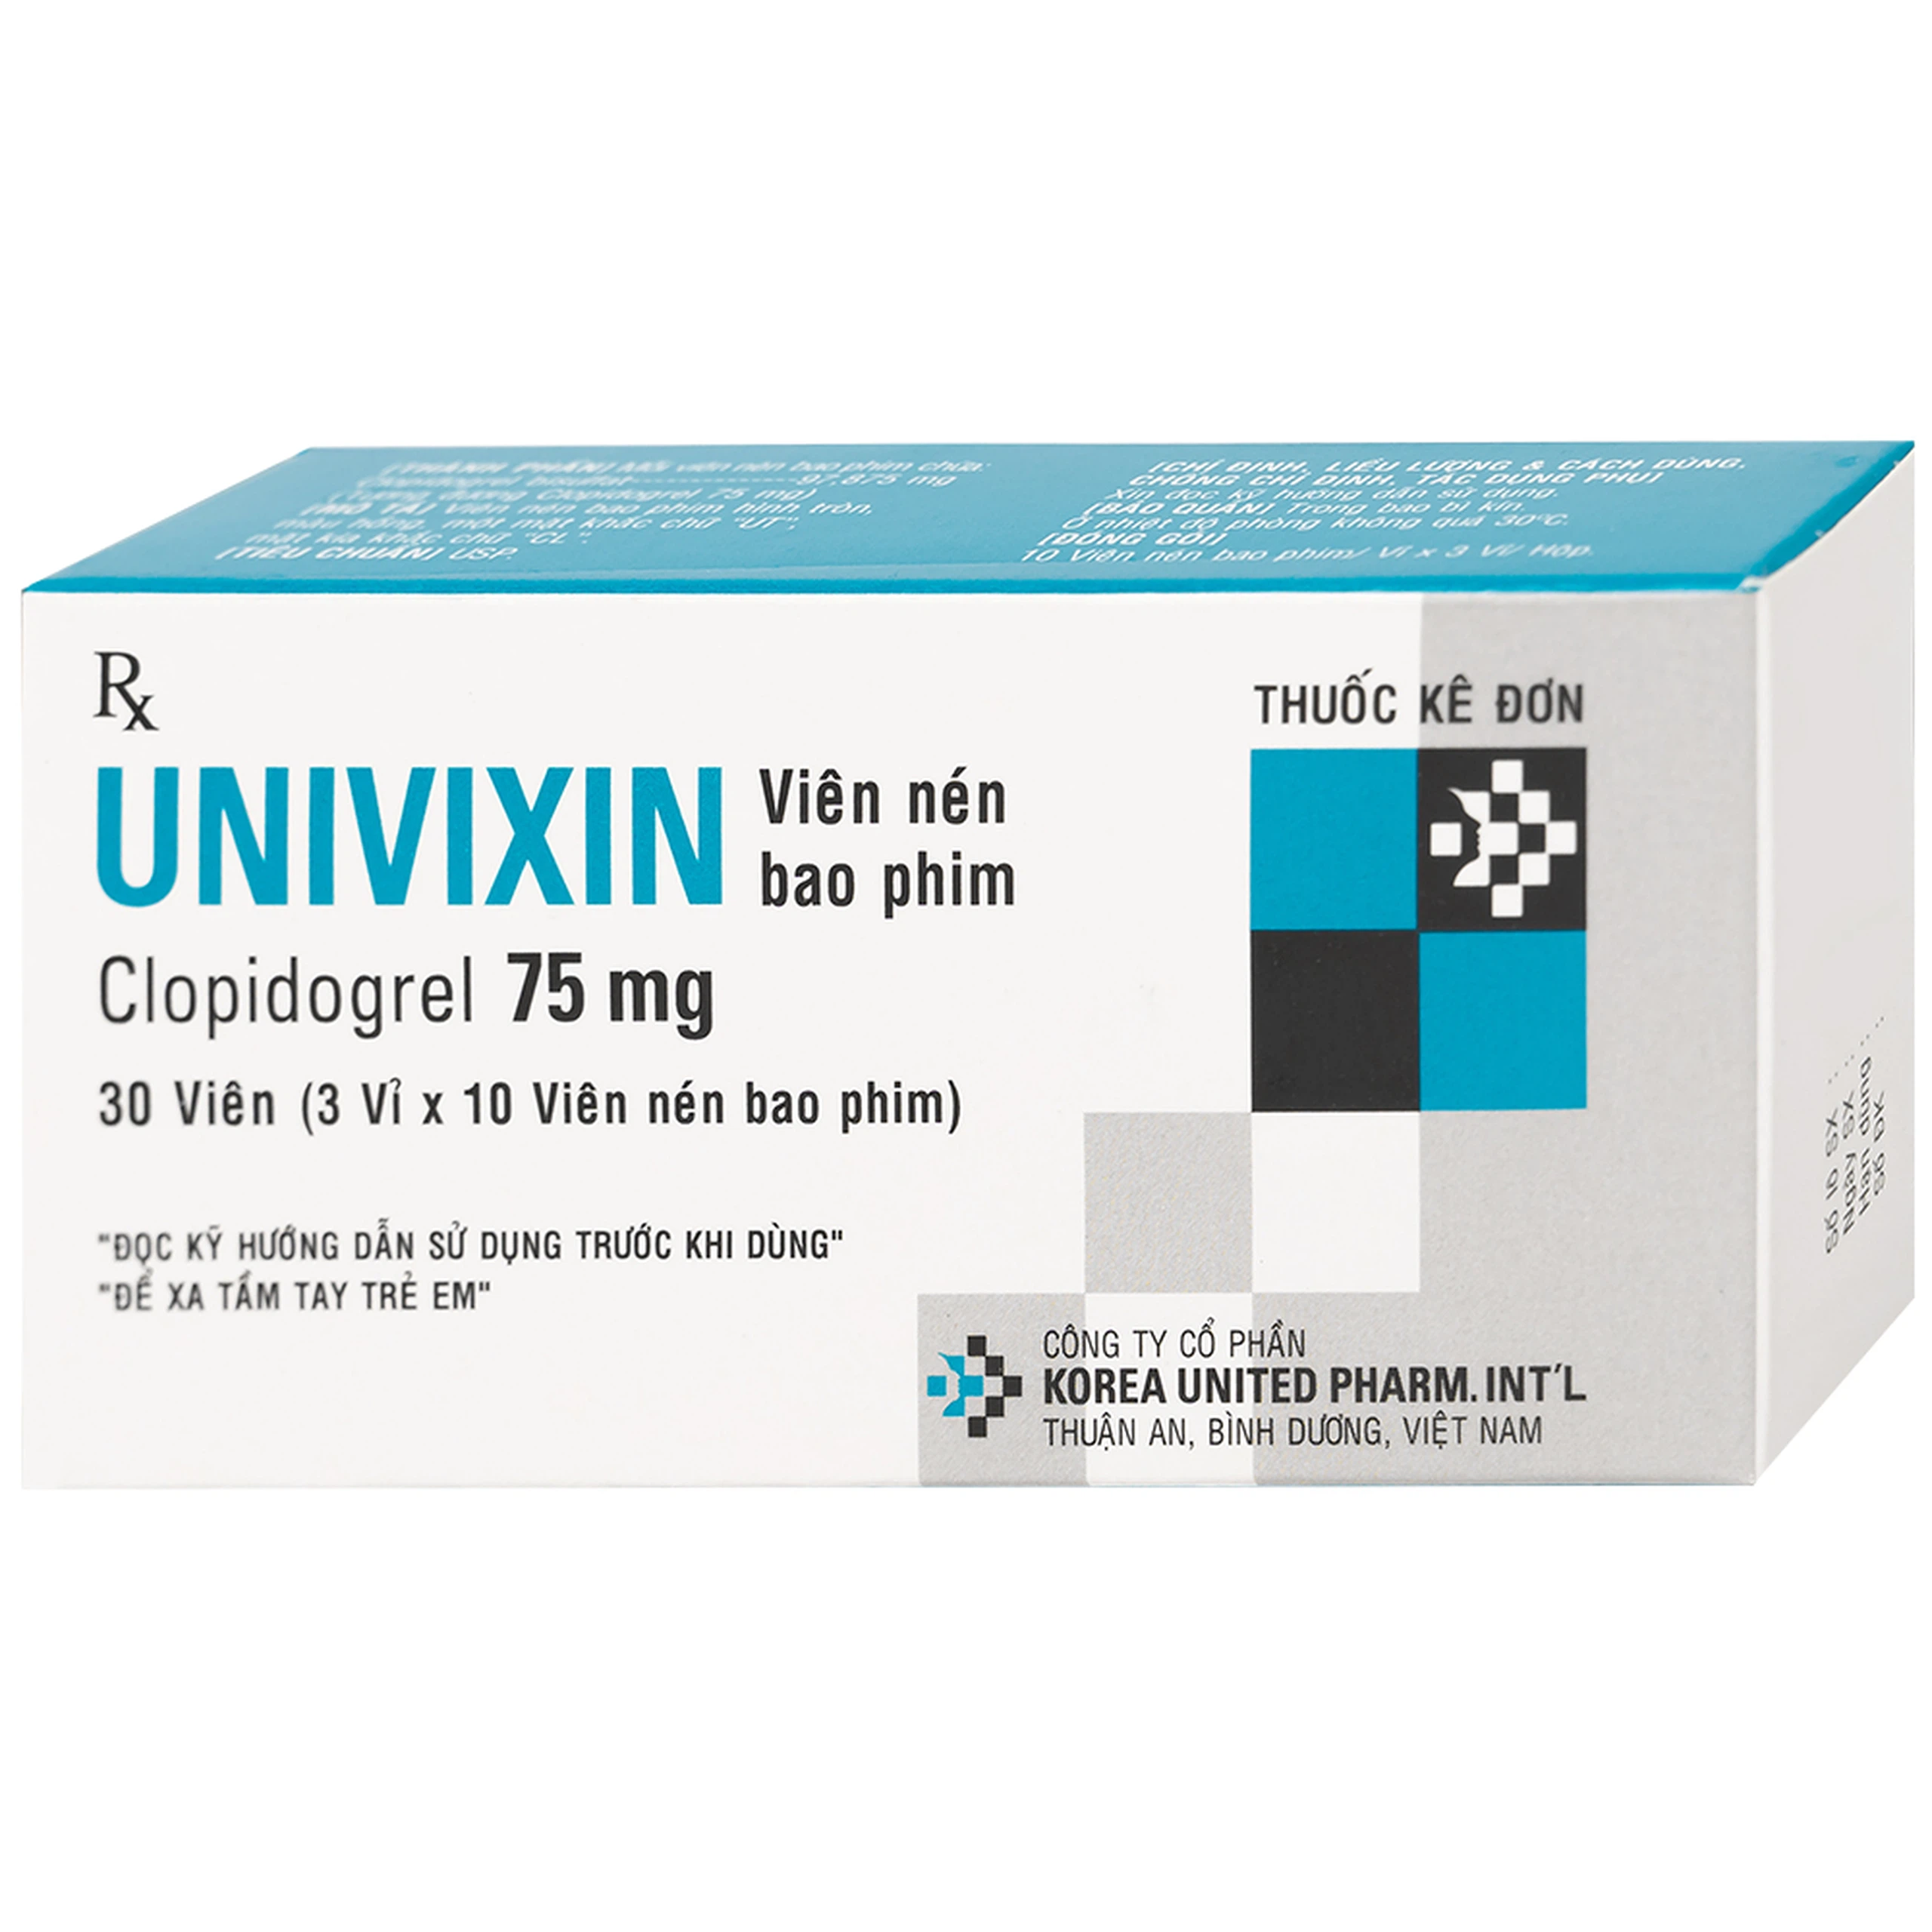 Thuốc Univixin Clopidogrel 75mg Korea United Pharm phòng ngừa cơn nhồi máu cơ tim và đột quỵ (3 vỉ x 10 viên)